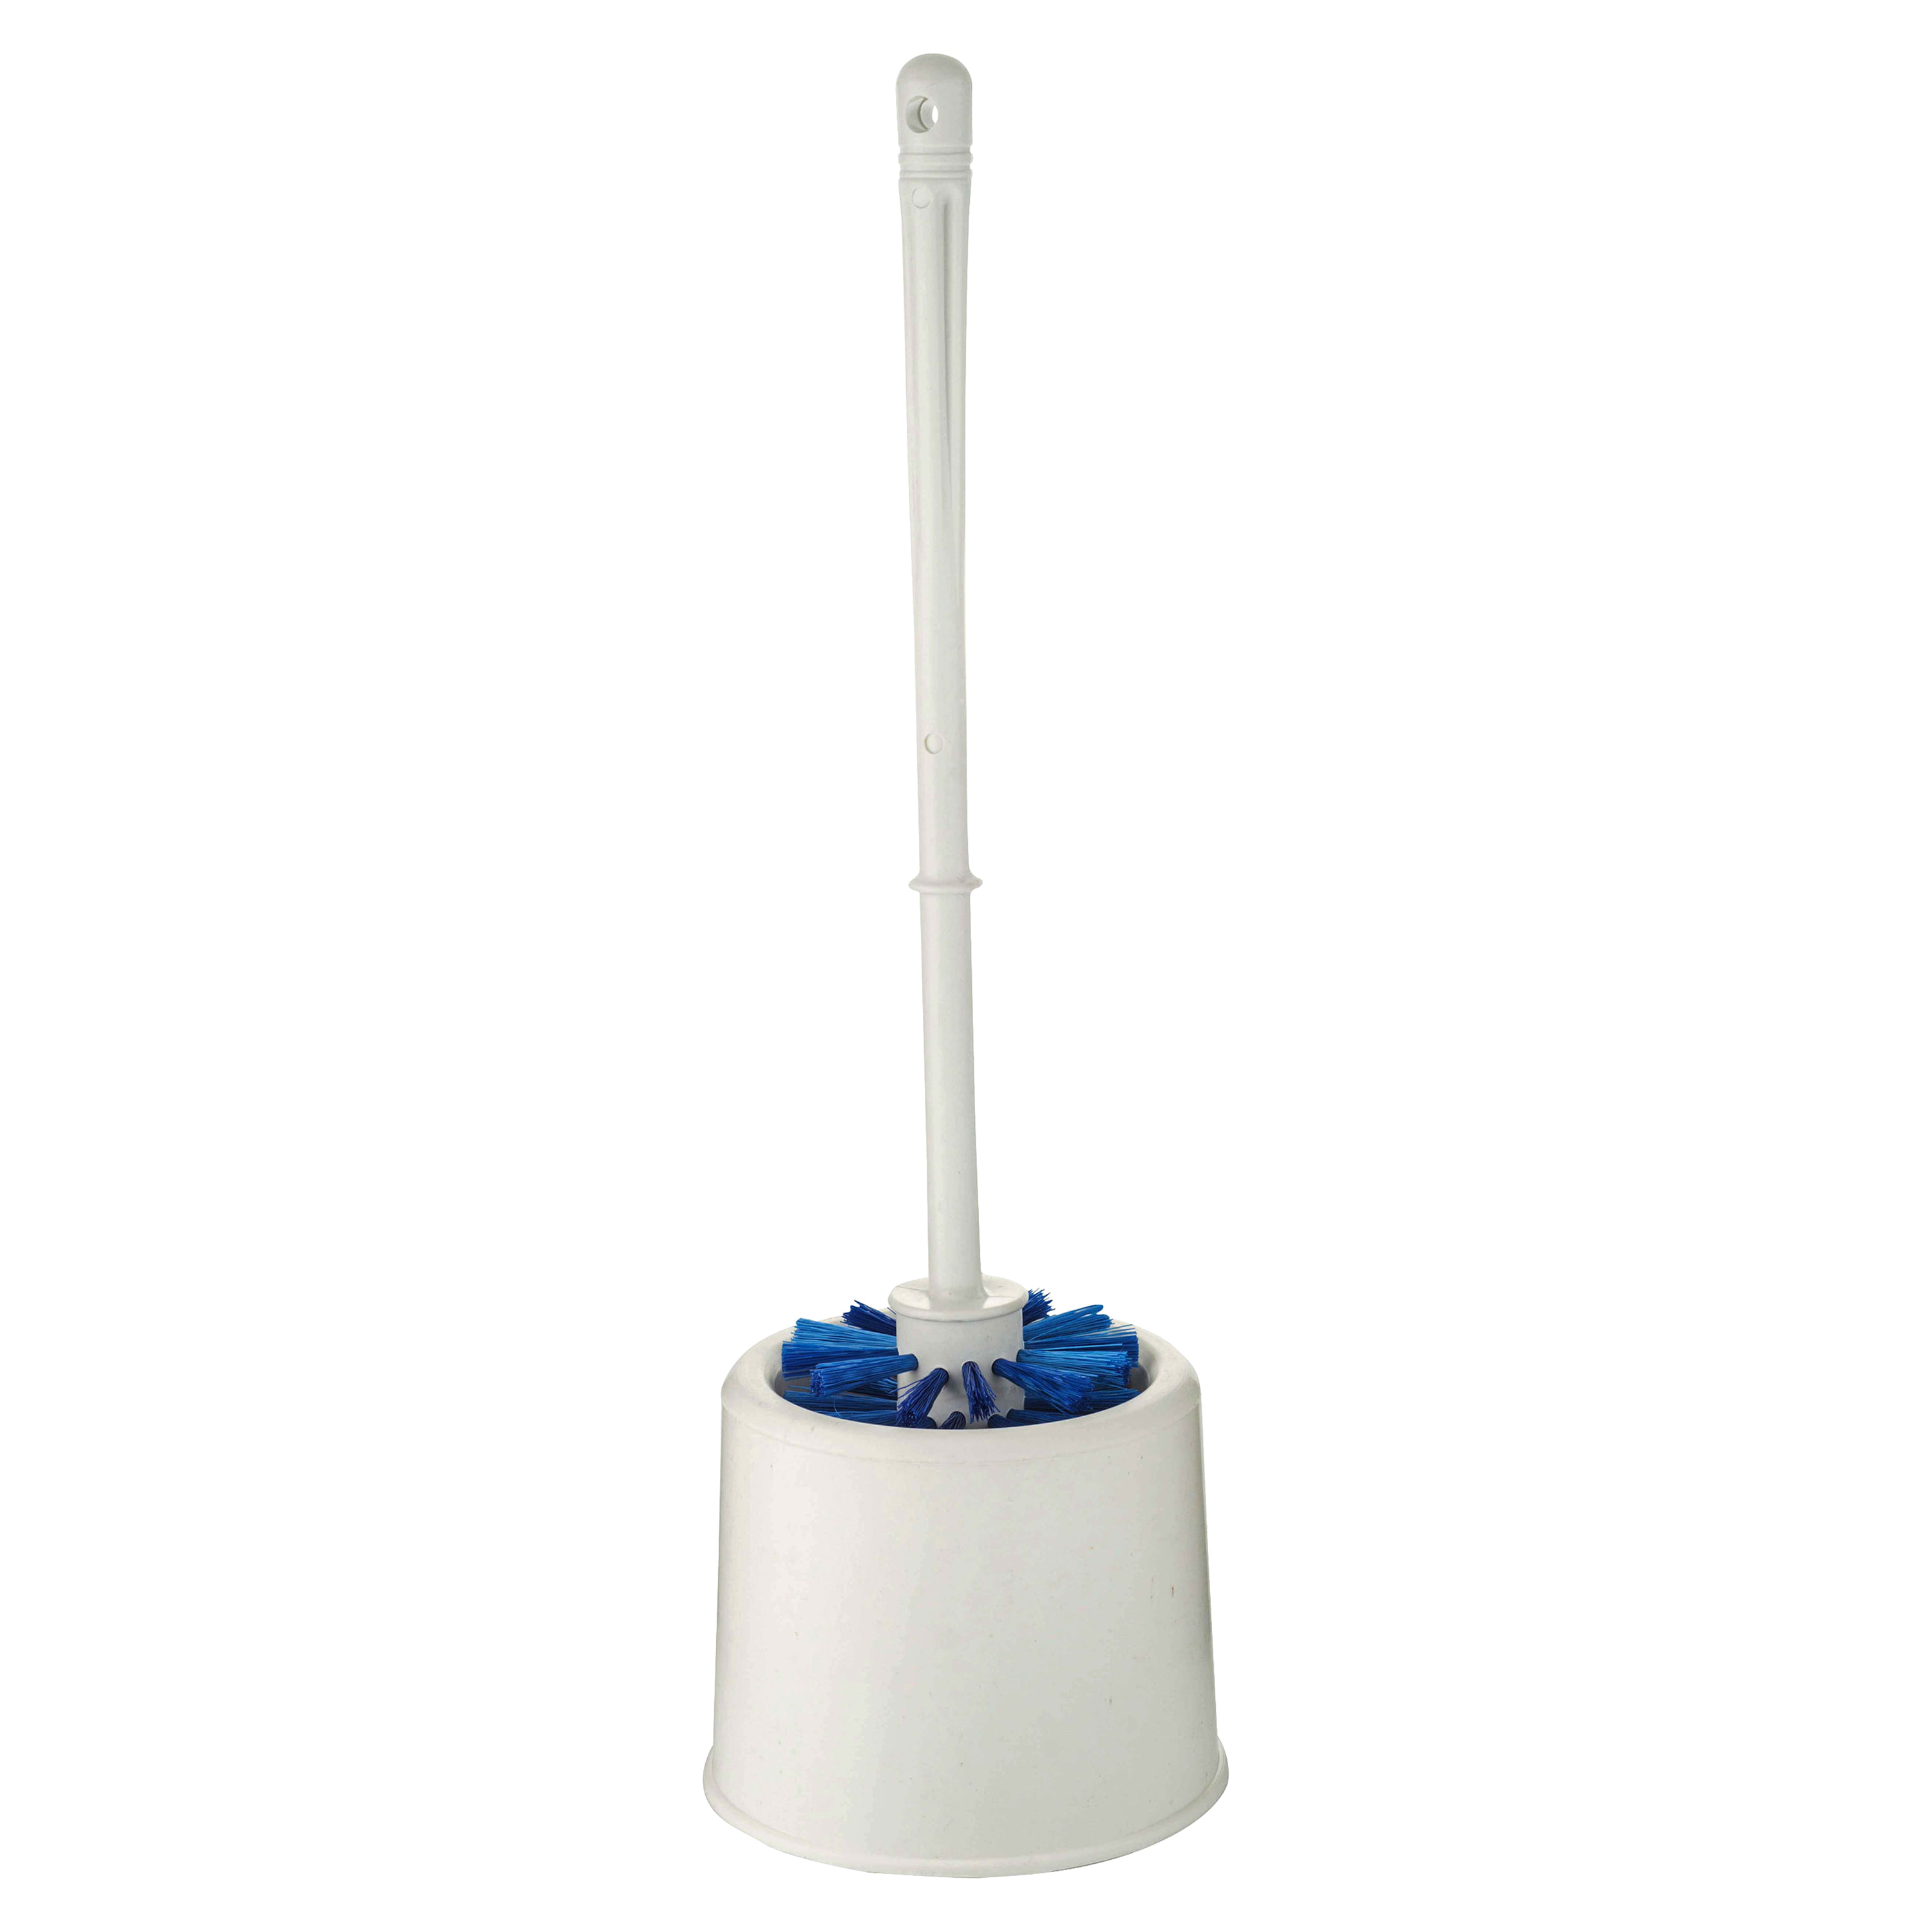 Cepillo para inodoro WC Escobilla y soporte de silicona para inodoro con  base de filtro de agua para baño montado en la pared / vertical (blanco)  Zhivalor ZSY-0203